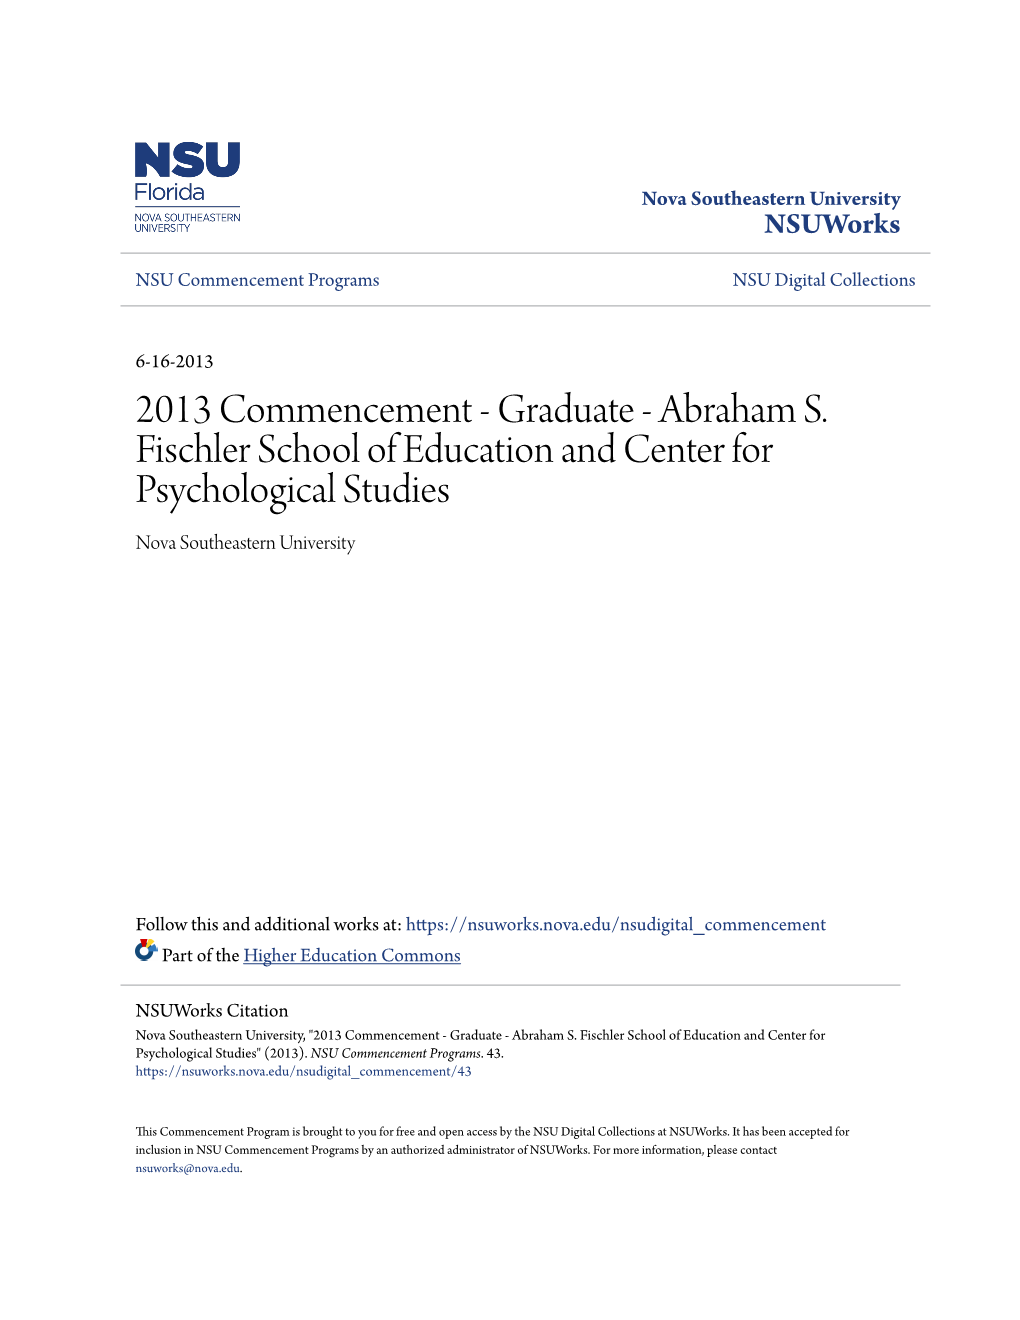 2013 Commencement - Graduate - Abraham S